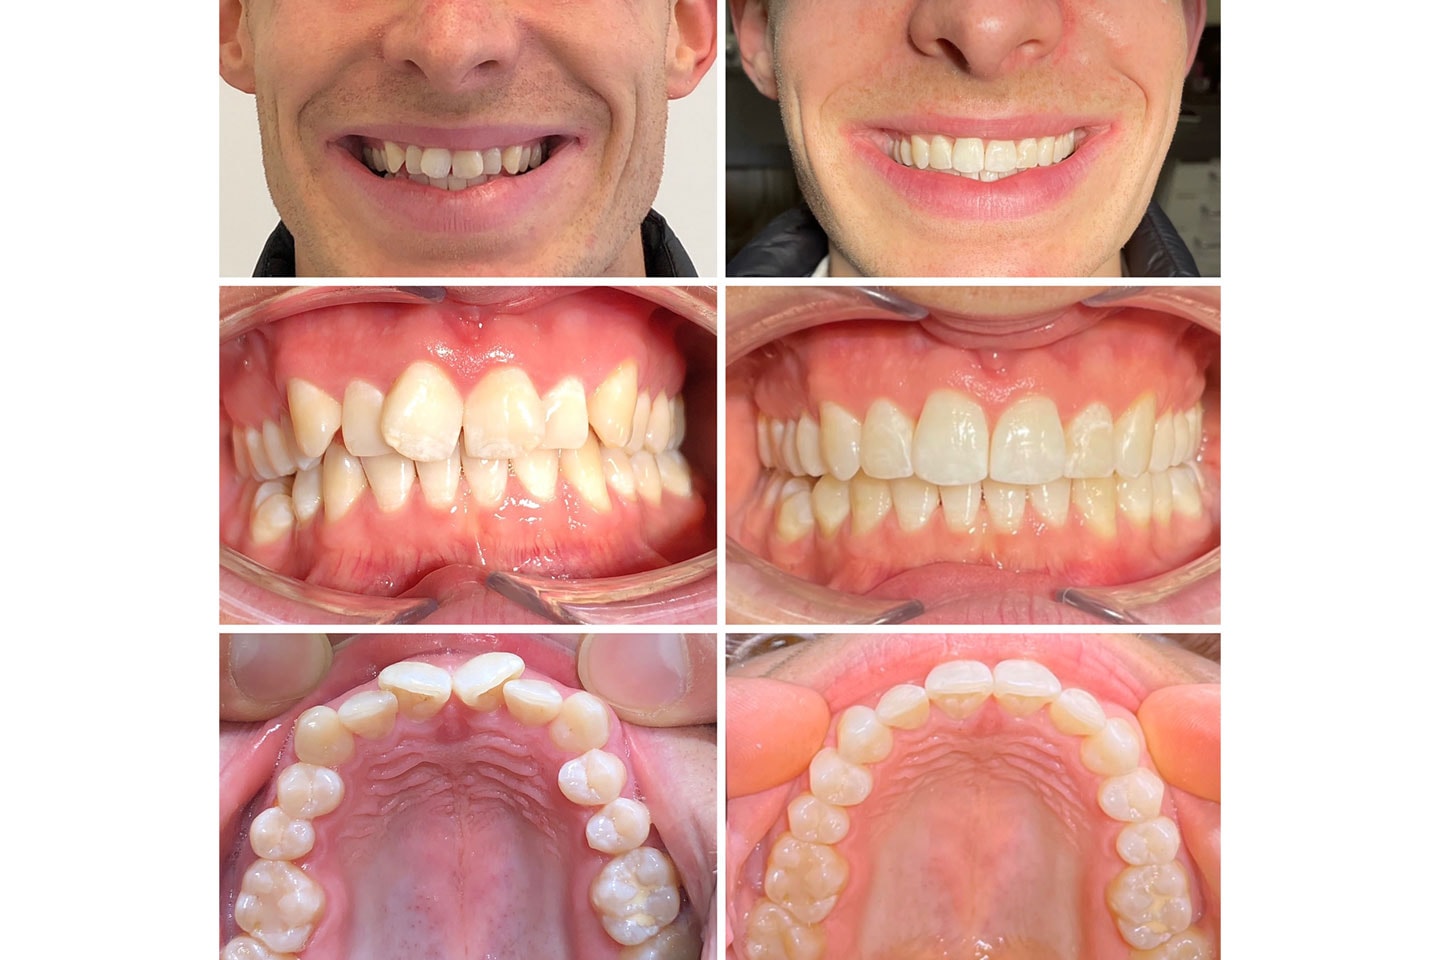 Tandreglering med Invisalign hos leg.tandläkare, nära Järntorget (9 av 12)